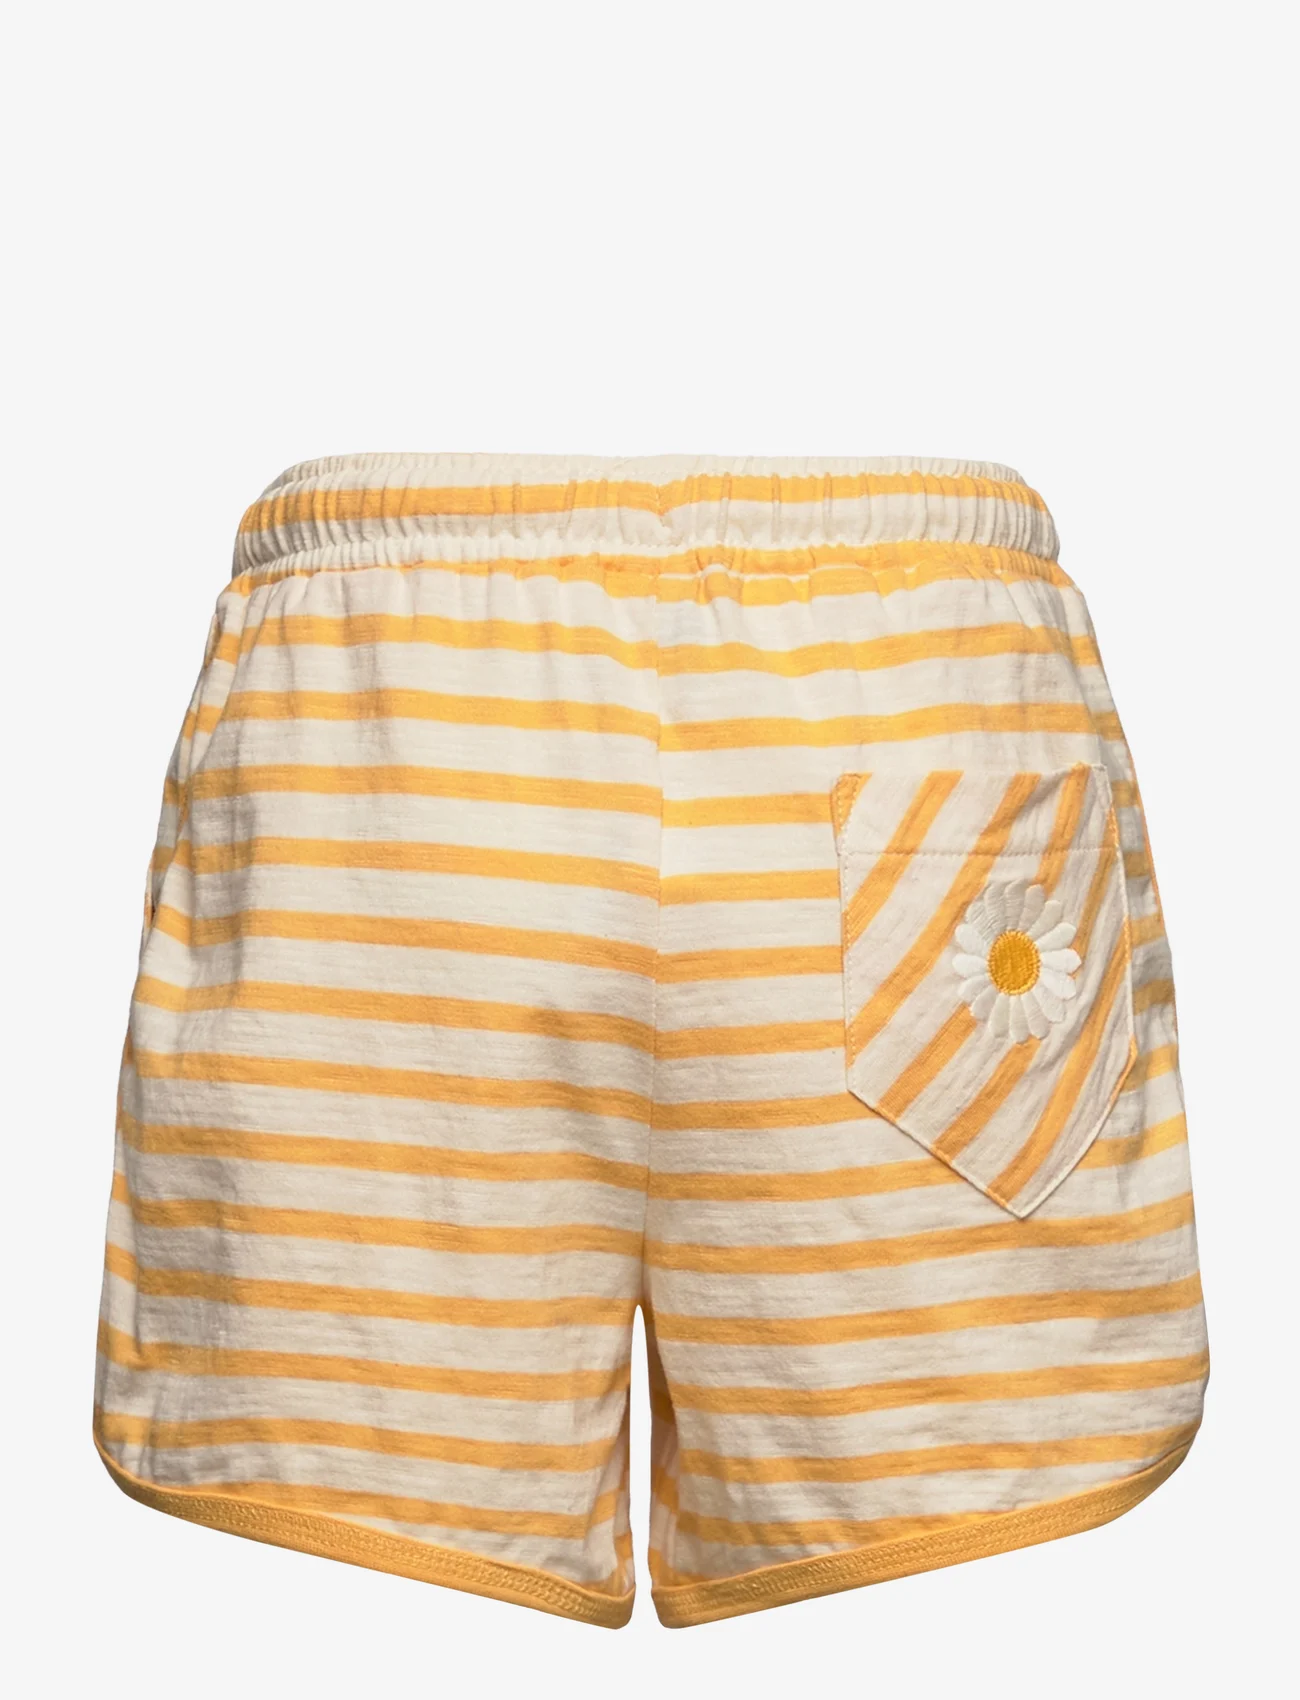 ebbe Kids - Sofia shorts - sweat shorts - yellow stripe - 1